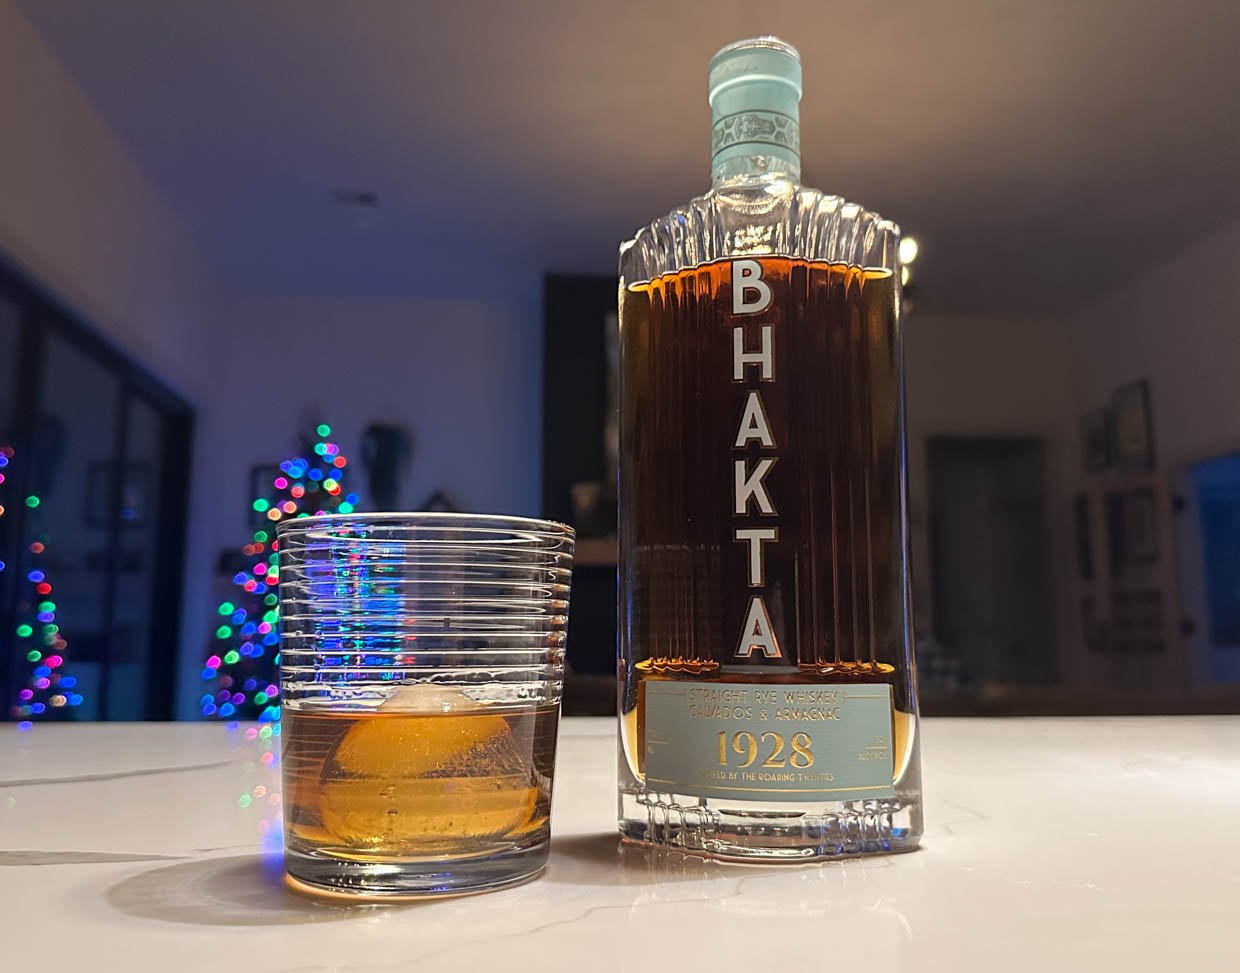 Bhakta 1928 Rye Whiskey